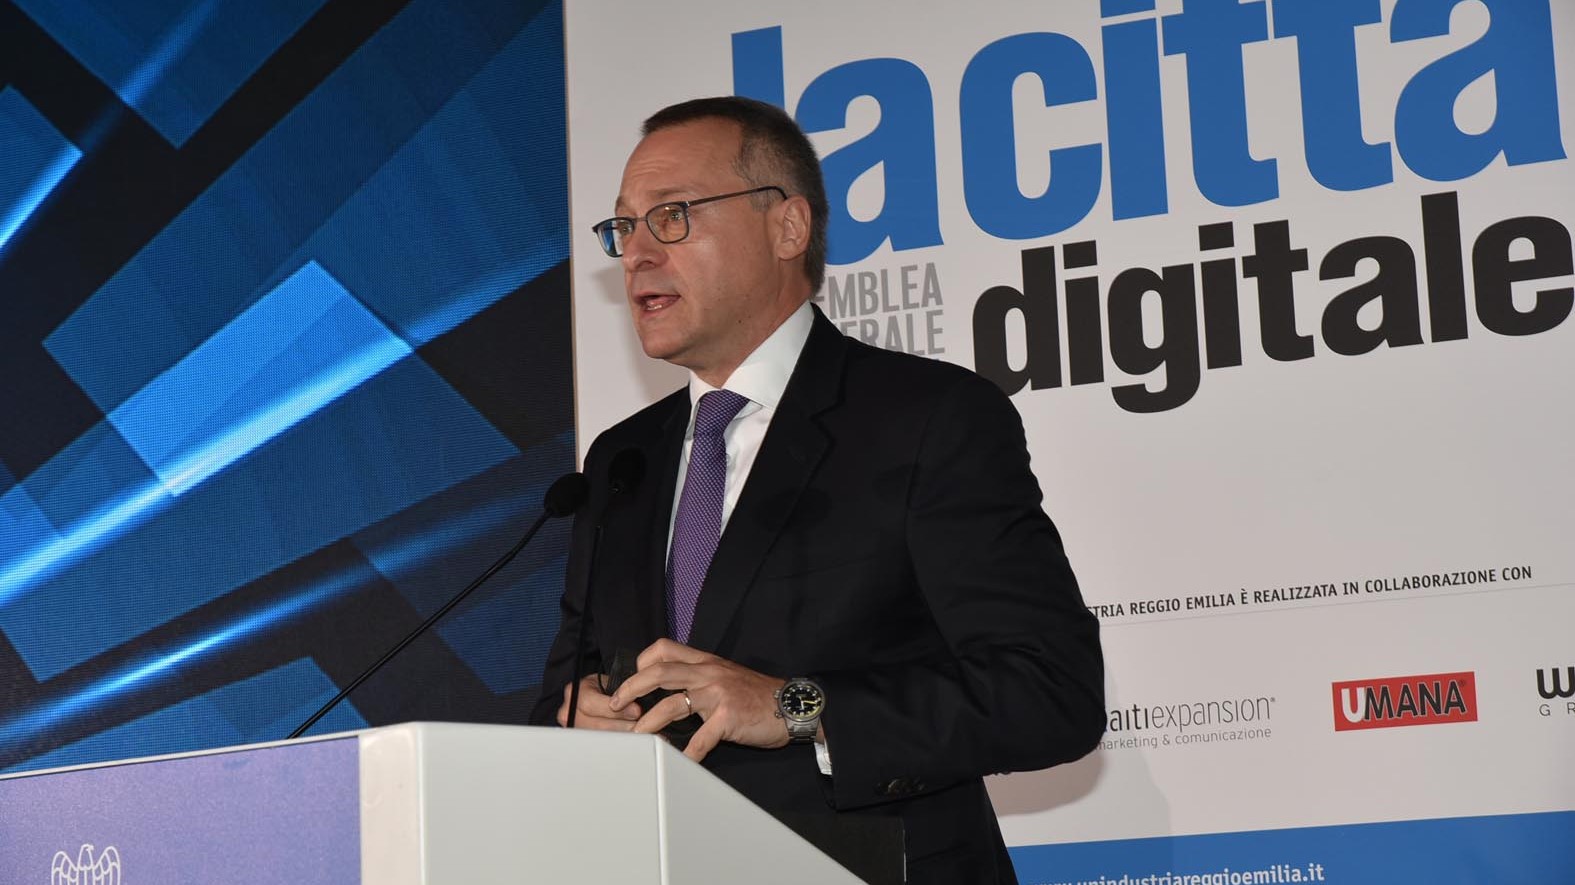 Assemblea generale 2021 - La città digitale: inaugurato il Digital Automation Lab